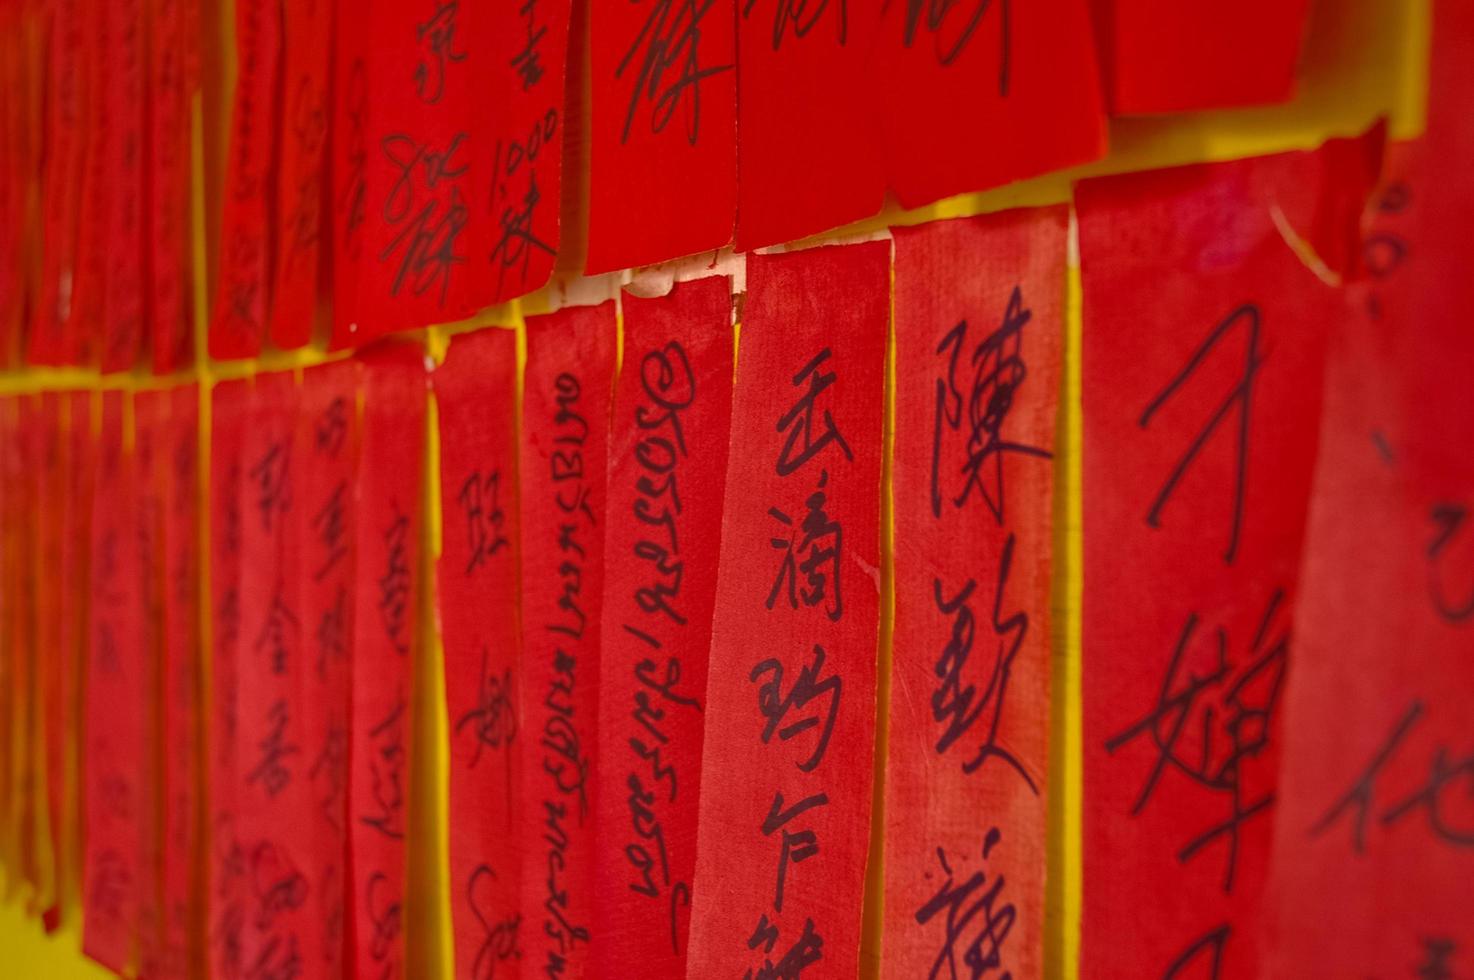 caracteres caligráficos chinos escritos a mano en etiquetas rojas foto